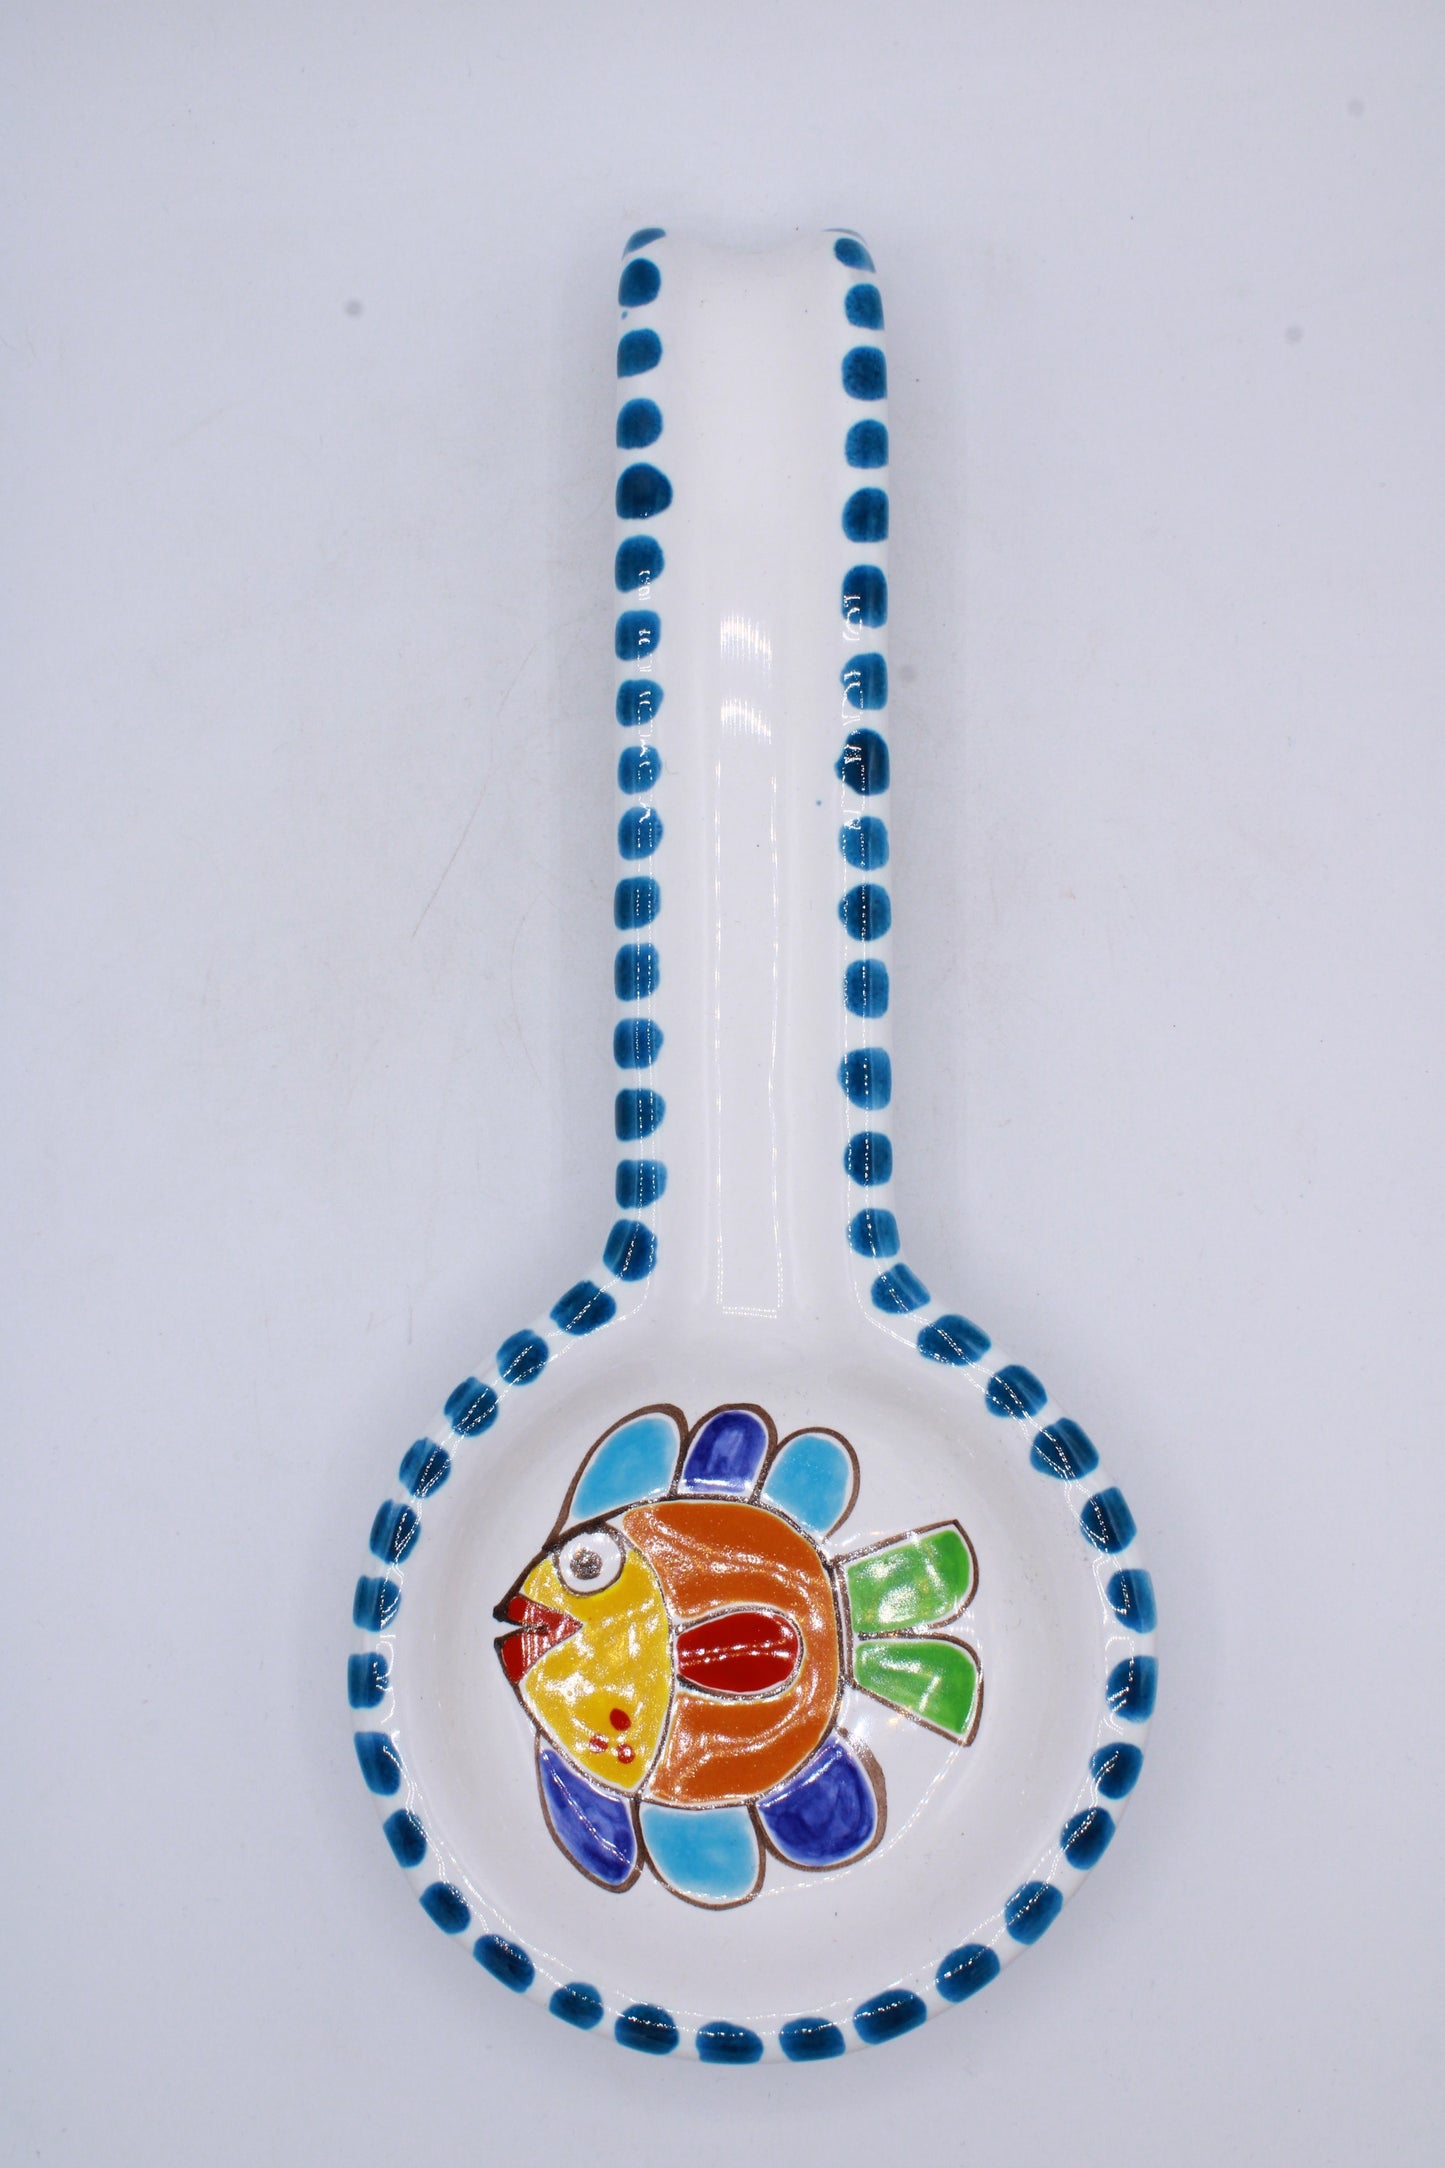 Poggiamestolo Pesce - Ceramiche Di Sicilia 